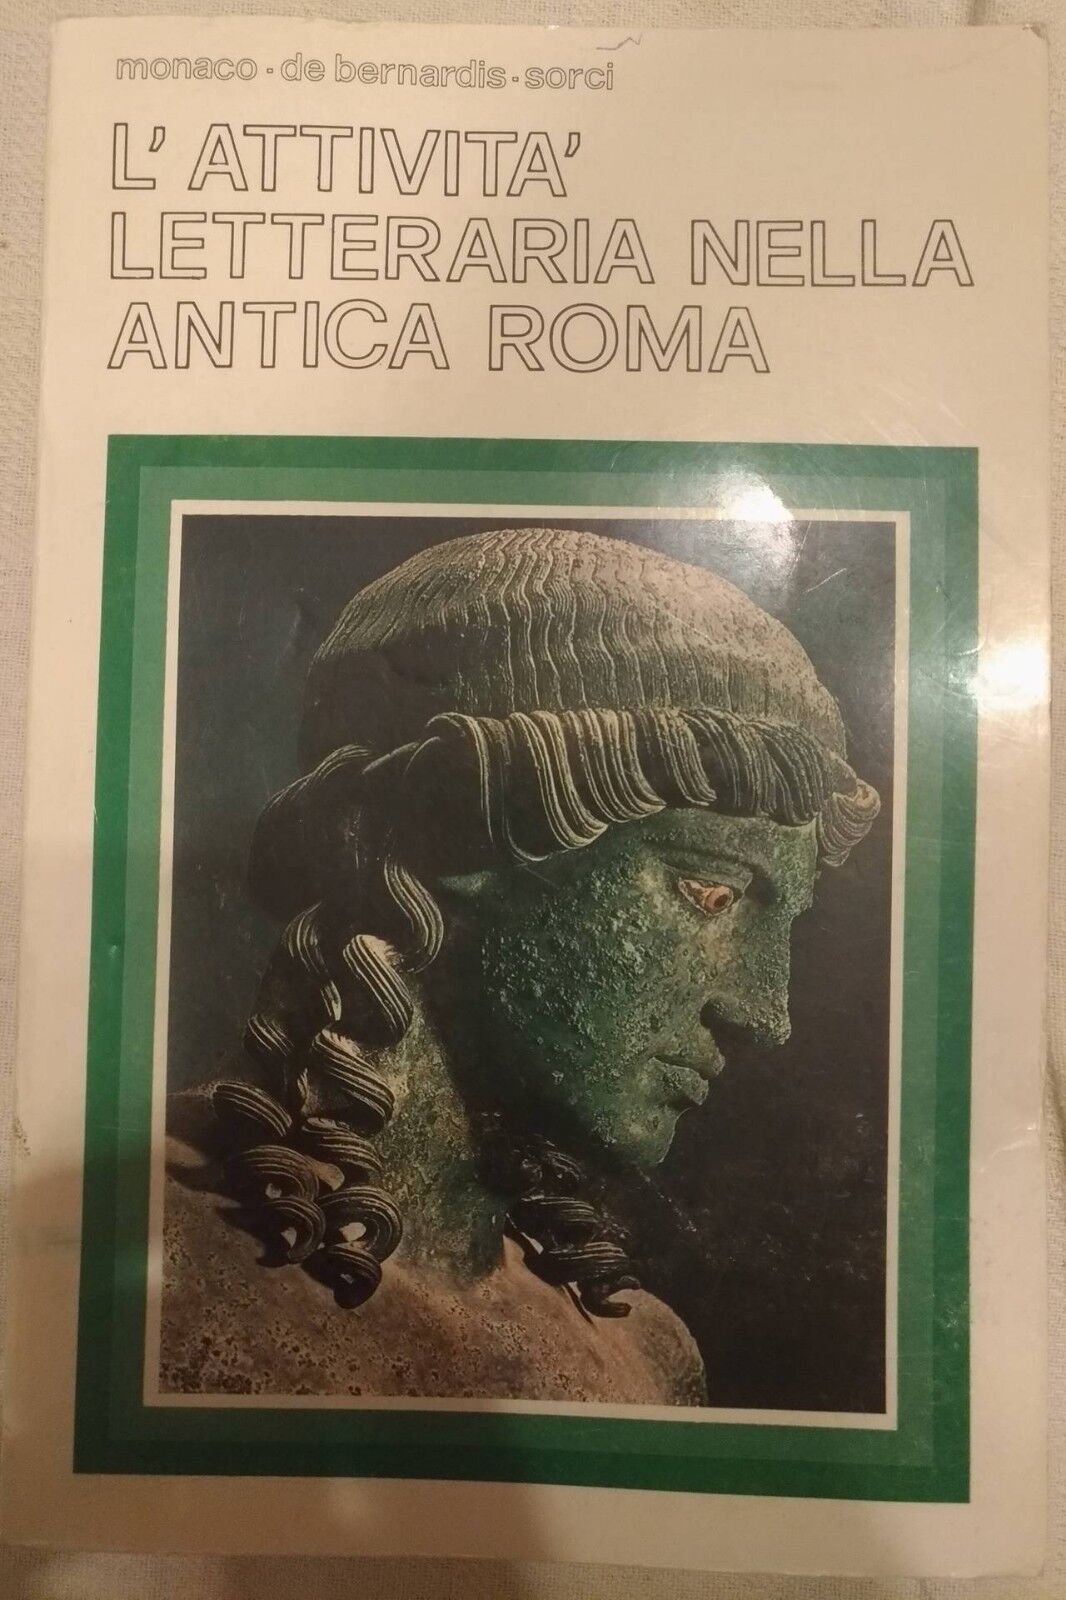 L'attivit? letteraria nell'antica roma - Monaco, De Bernardis, Sorci, 1982 - S libro usato